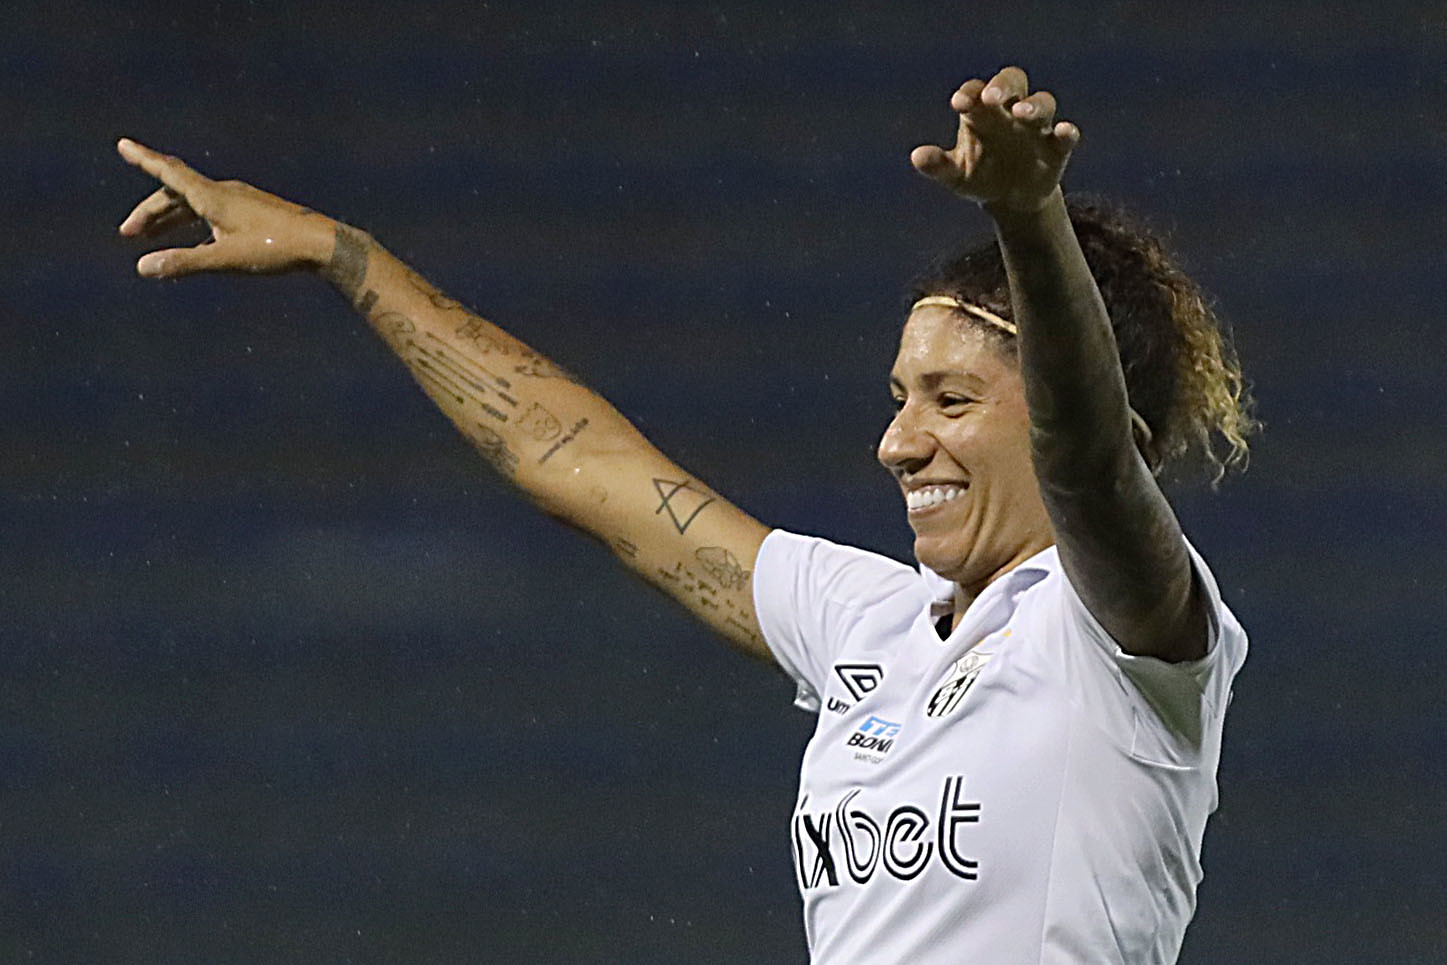 Cristiane faz quatro gols em goleada do Santos pelo Paulista